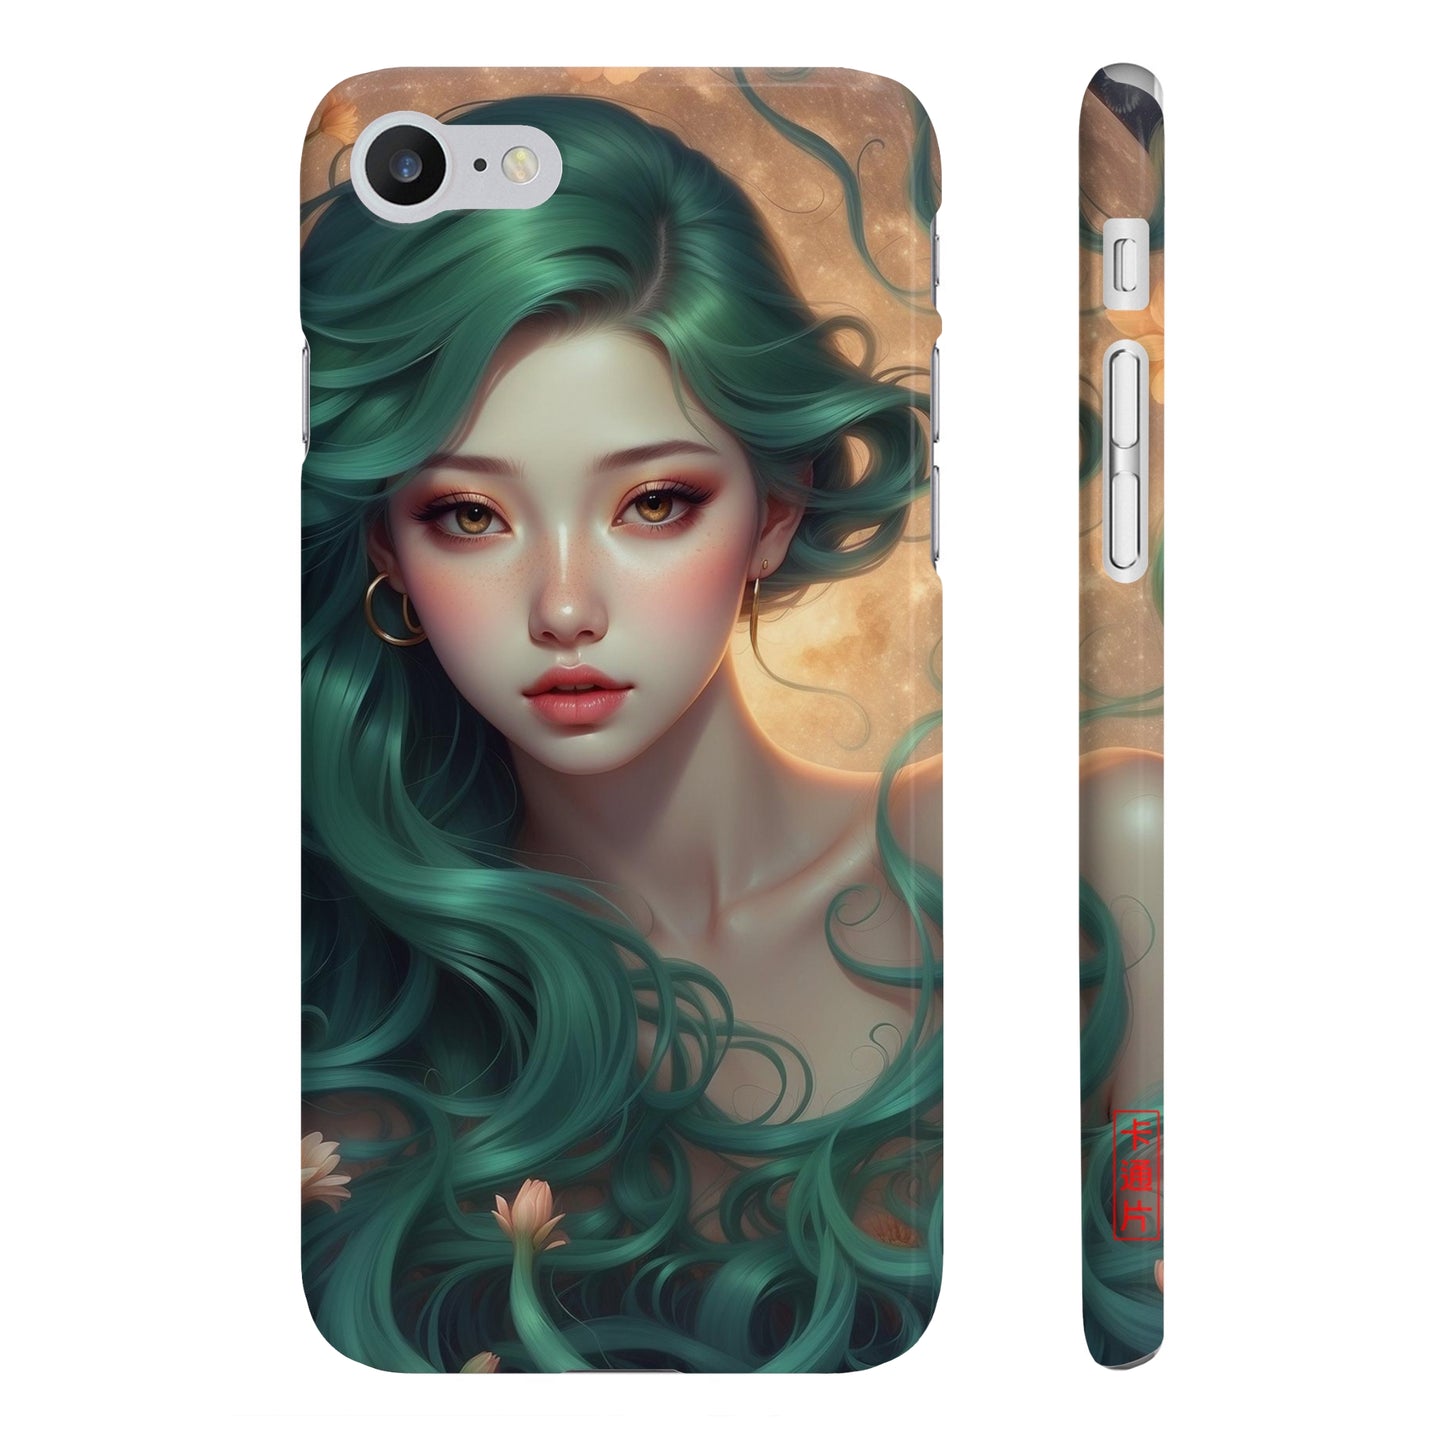 Kǎtōng Piàn - Mermaid Collection - 038 - Slim Phone Cases Printify